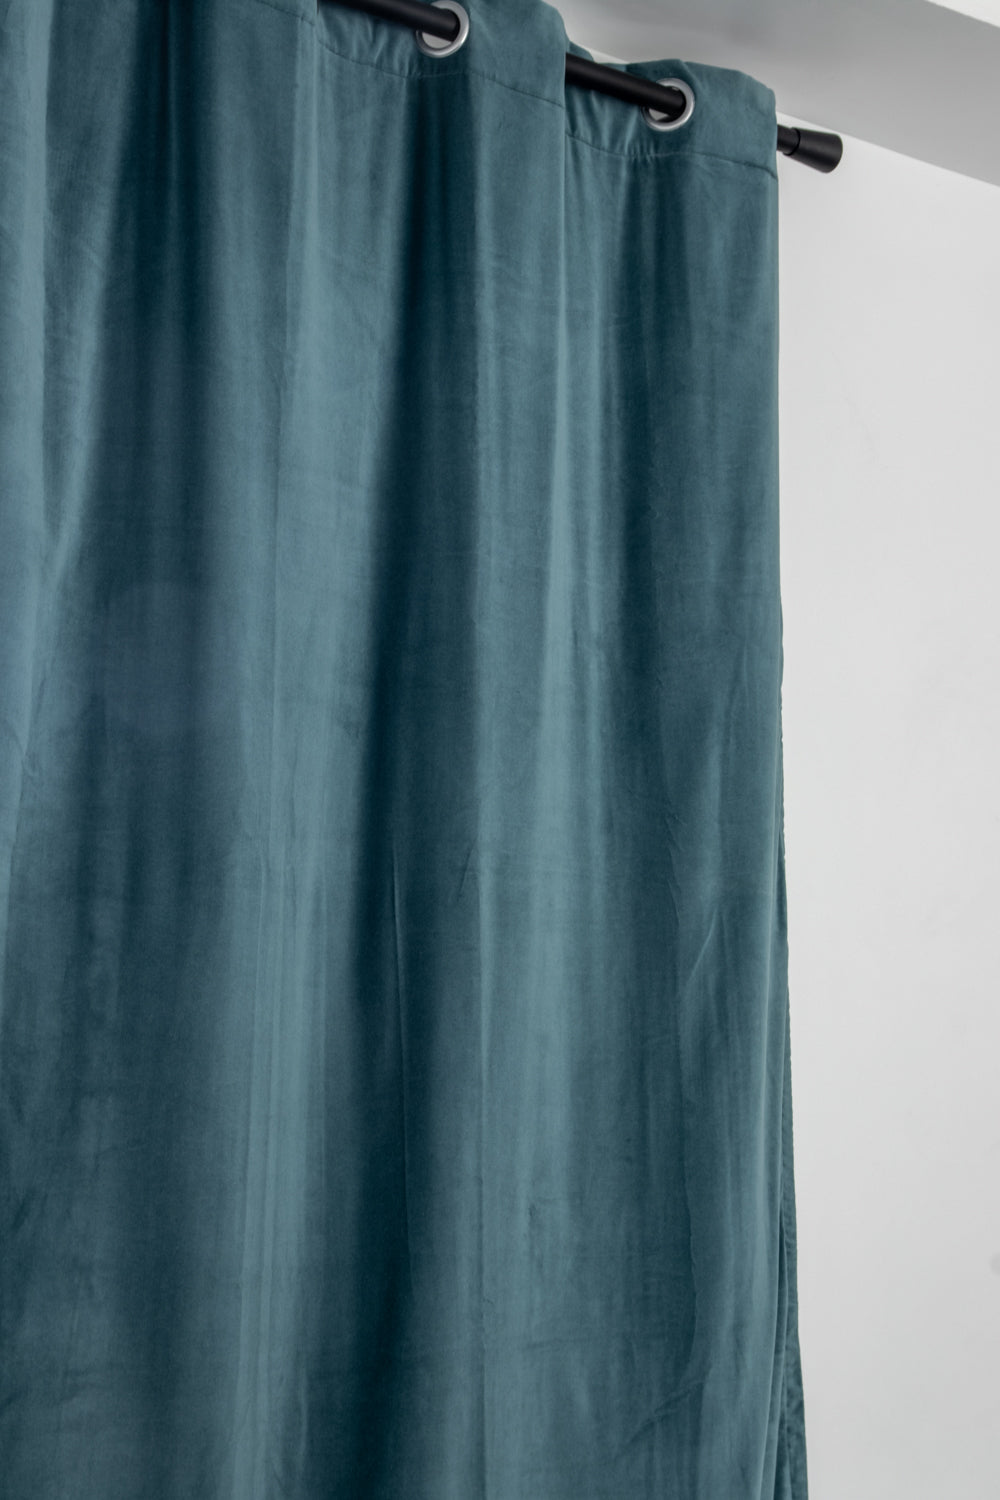 Rideaux en velours de coton doublés Elise 140x280 cm - Vivaraise, Vert de Gris